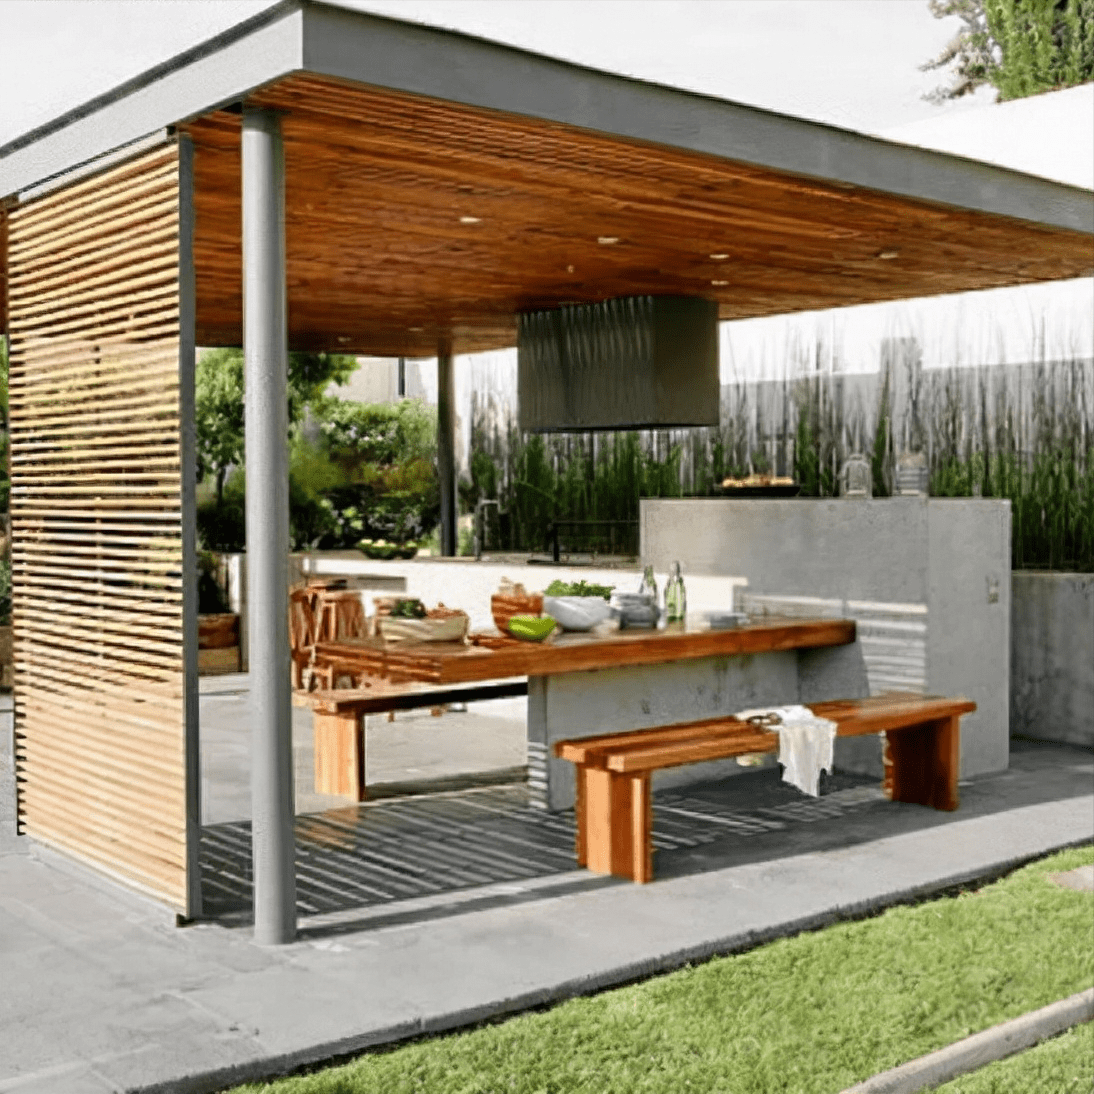 庭院凉亭怎么做50款现代简约风格的凉亭设计案例供您选择